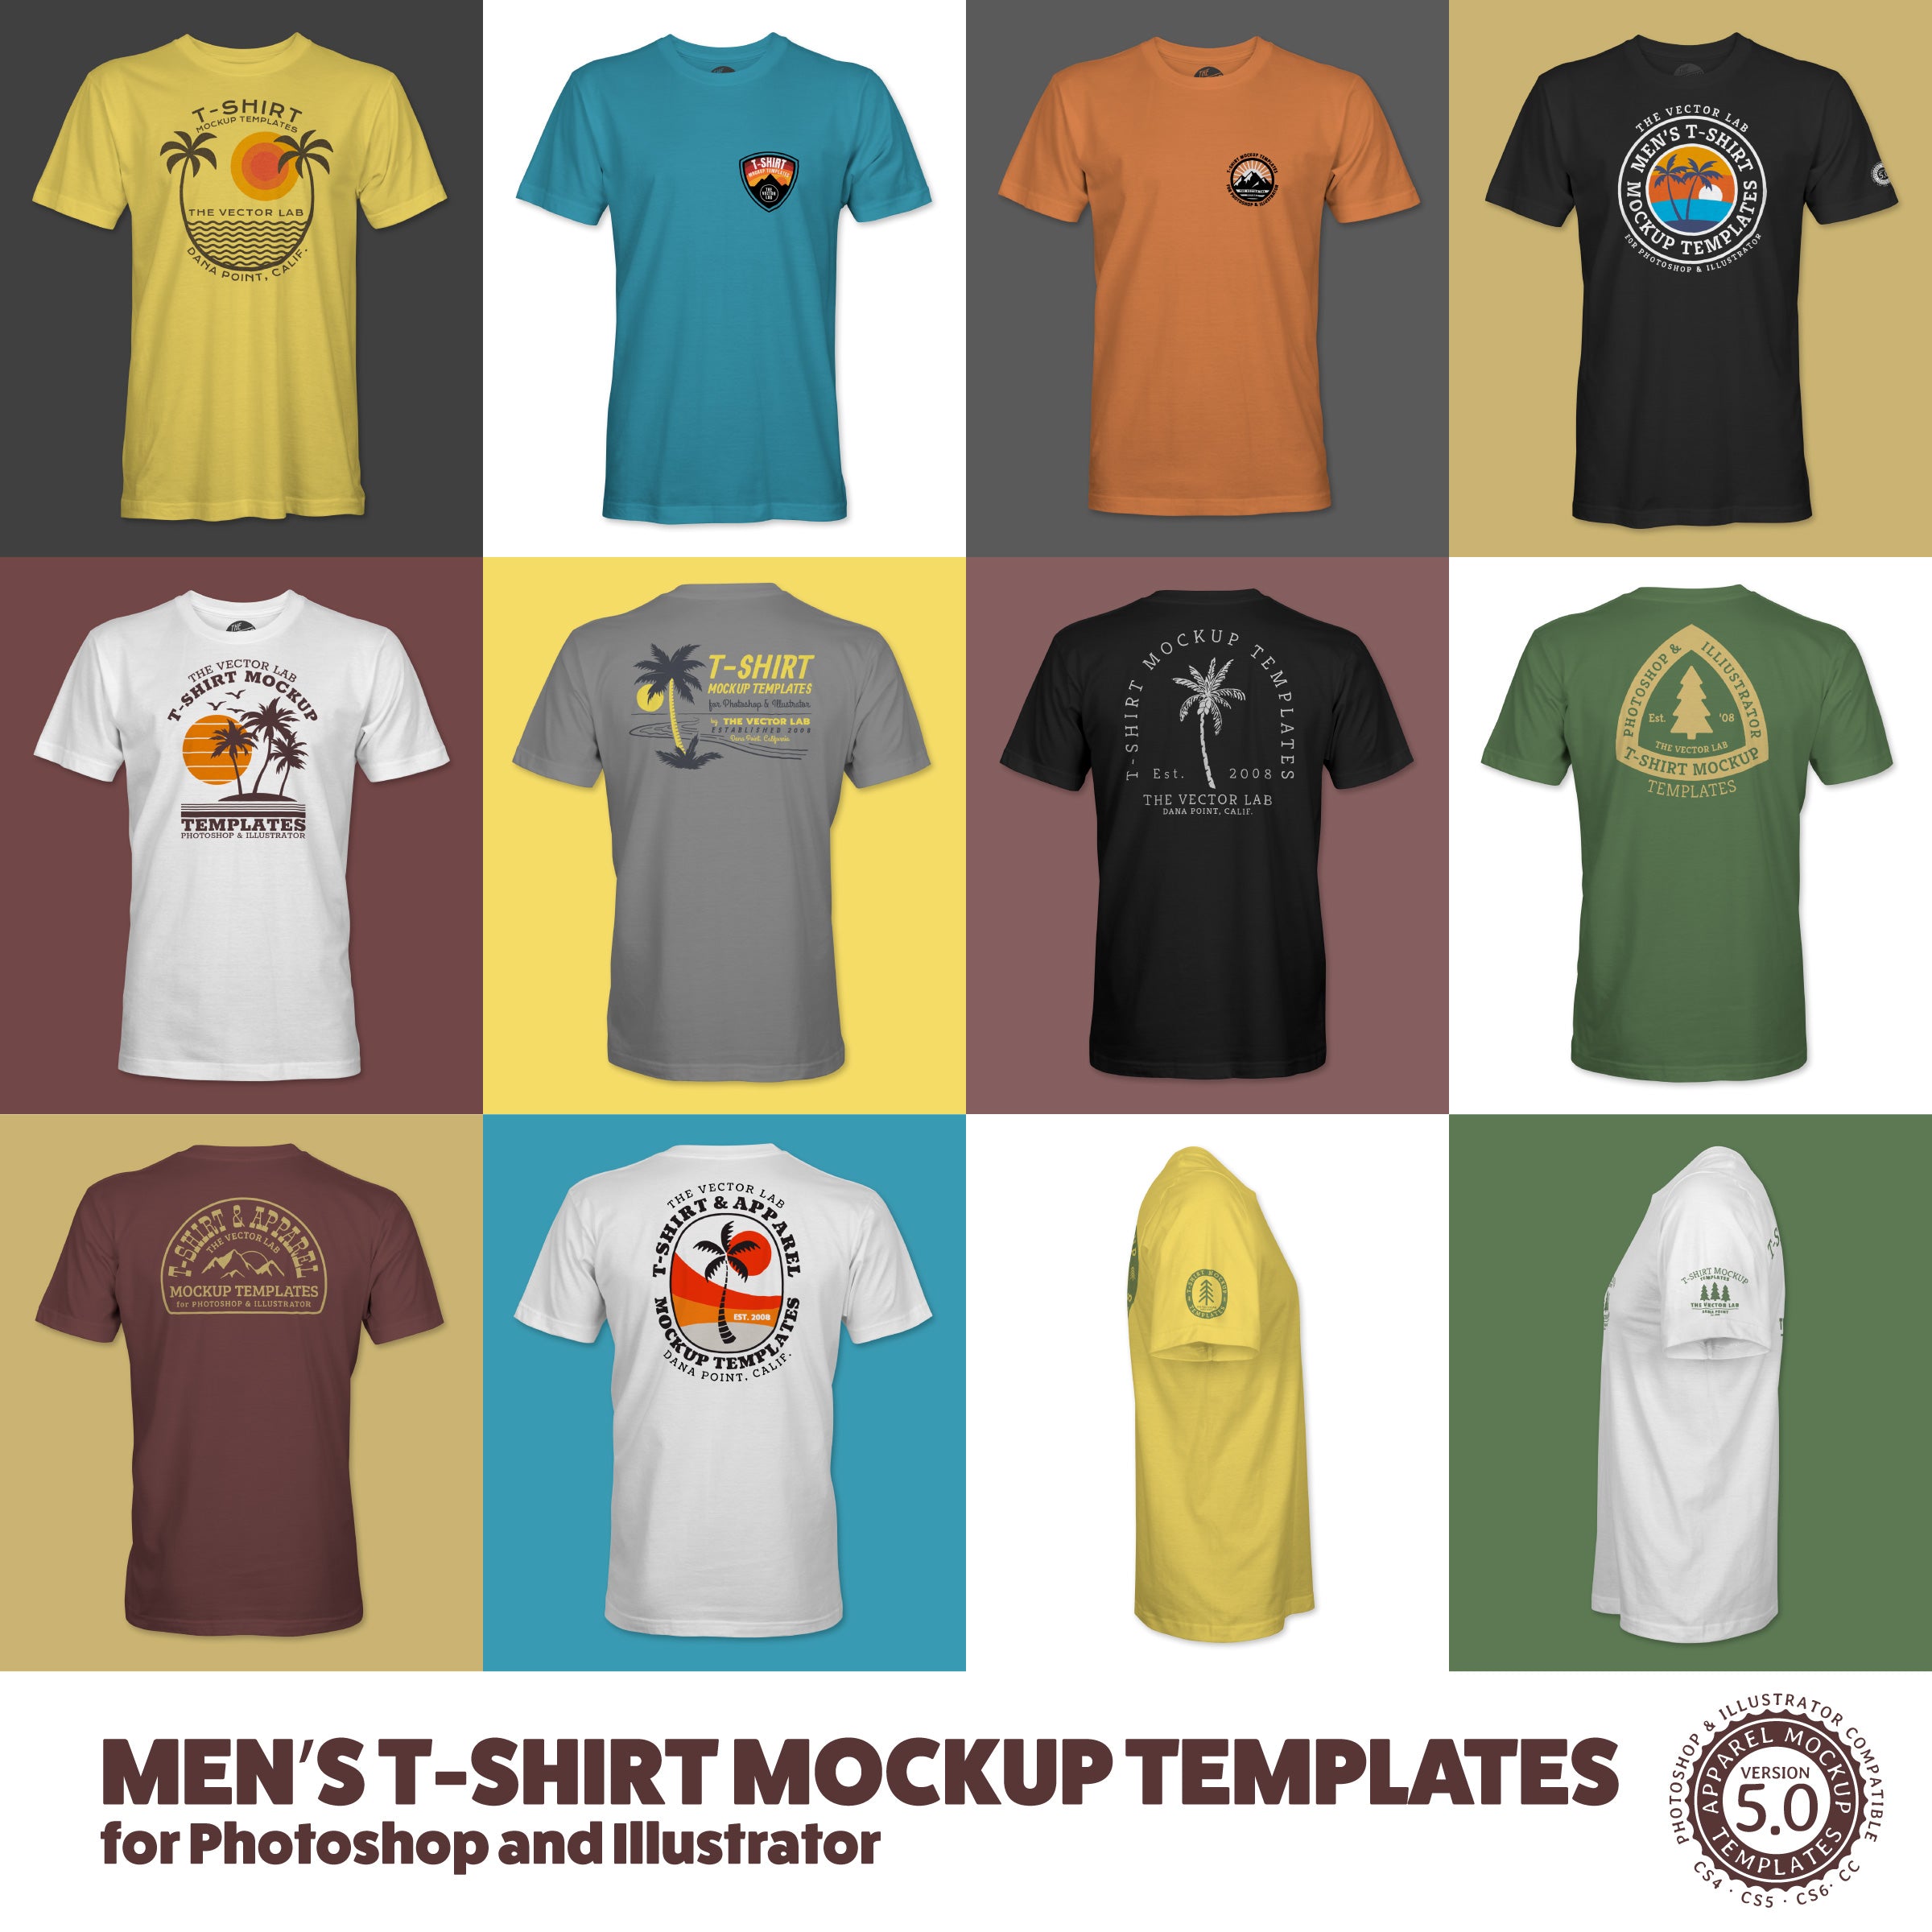 Men's TShirt Mockup Templates 01 TheVectorLab